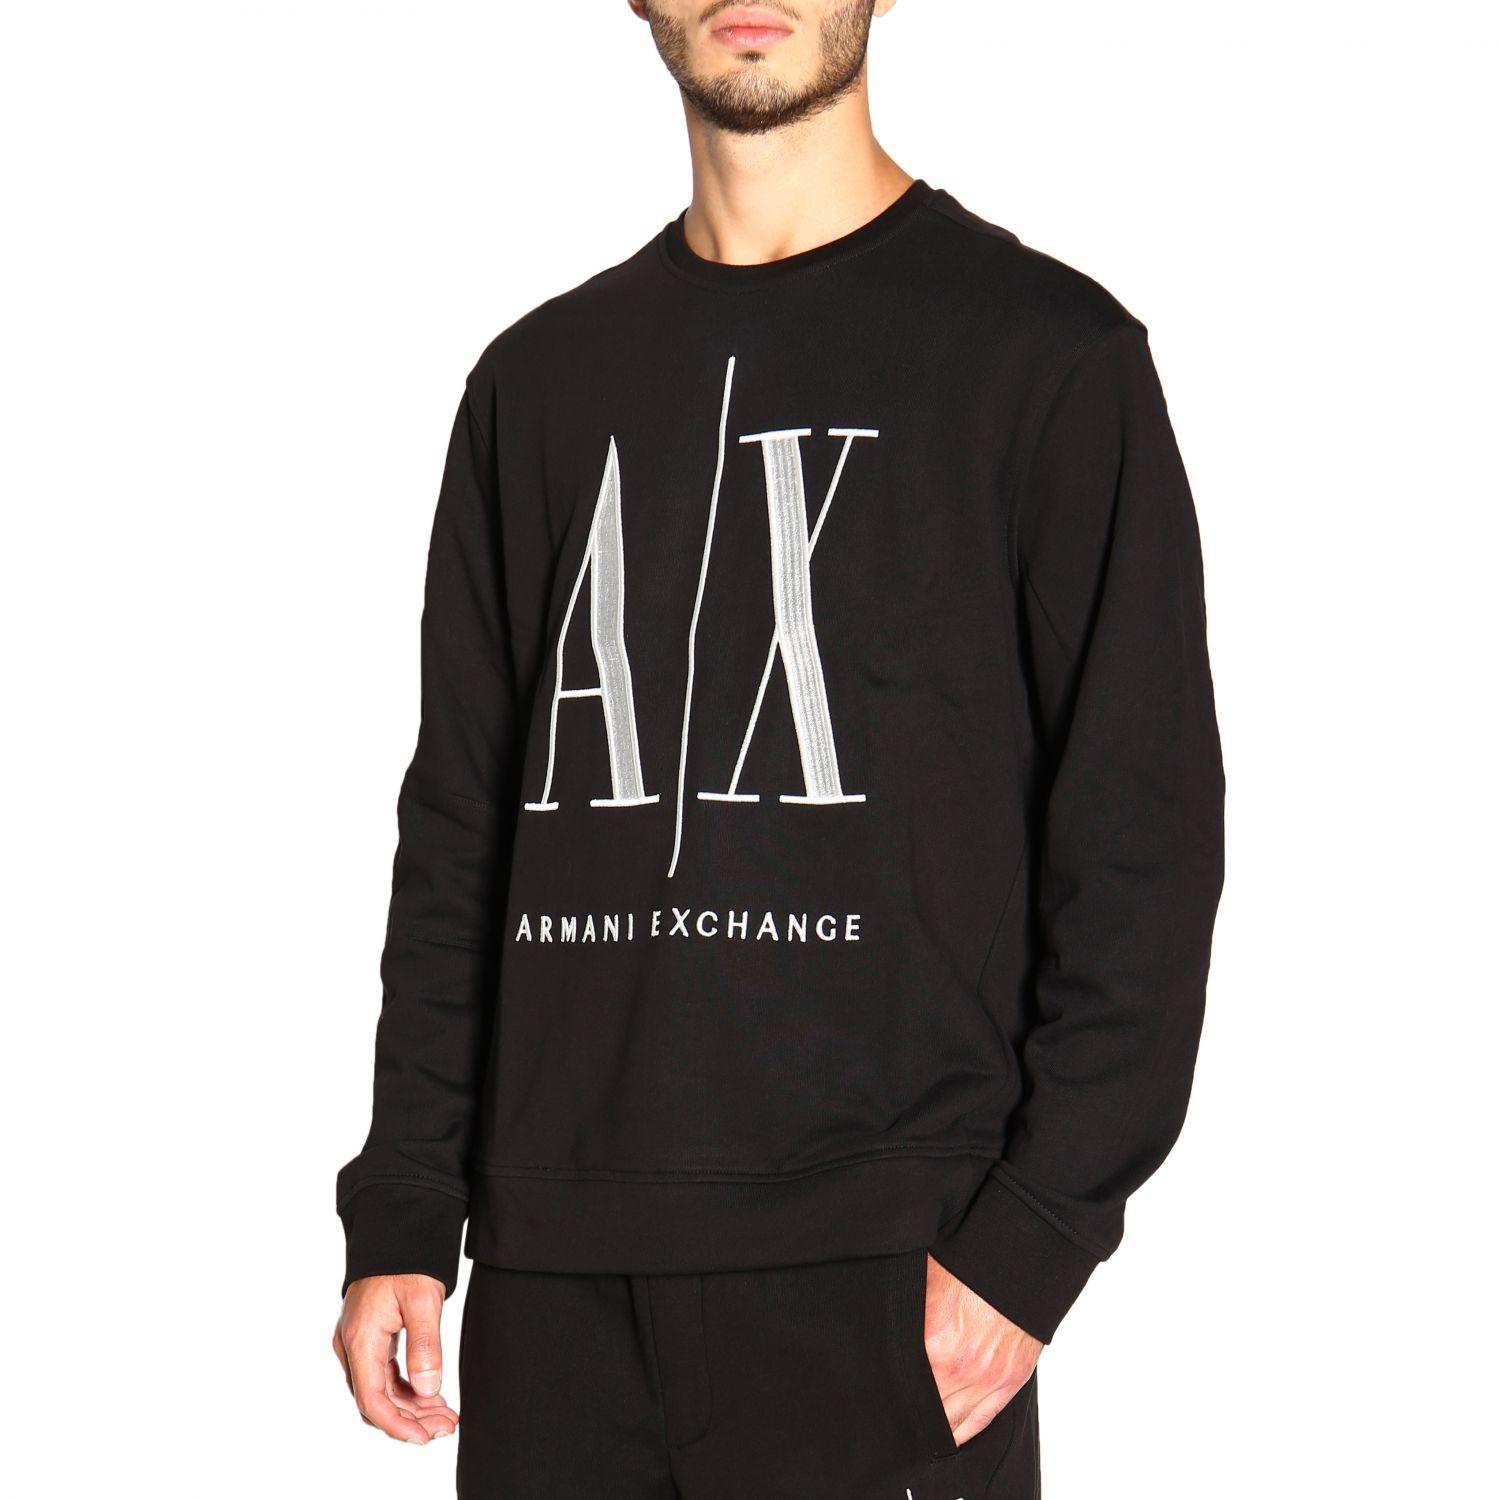 Armani Exchange Men's Sweatshirt in Black for Men - Lyst